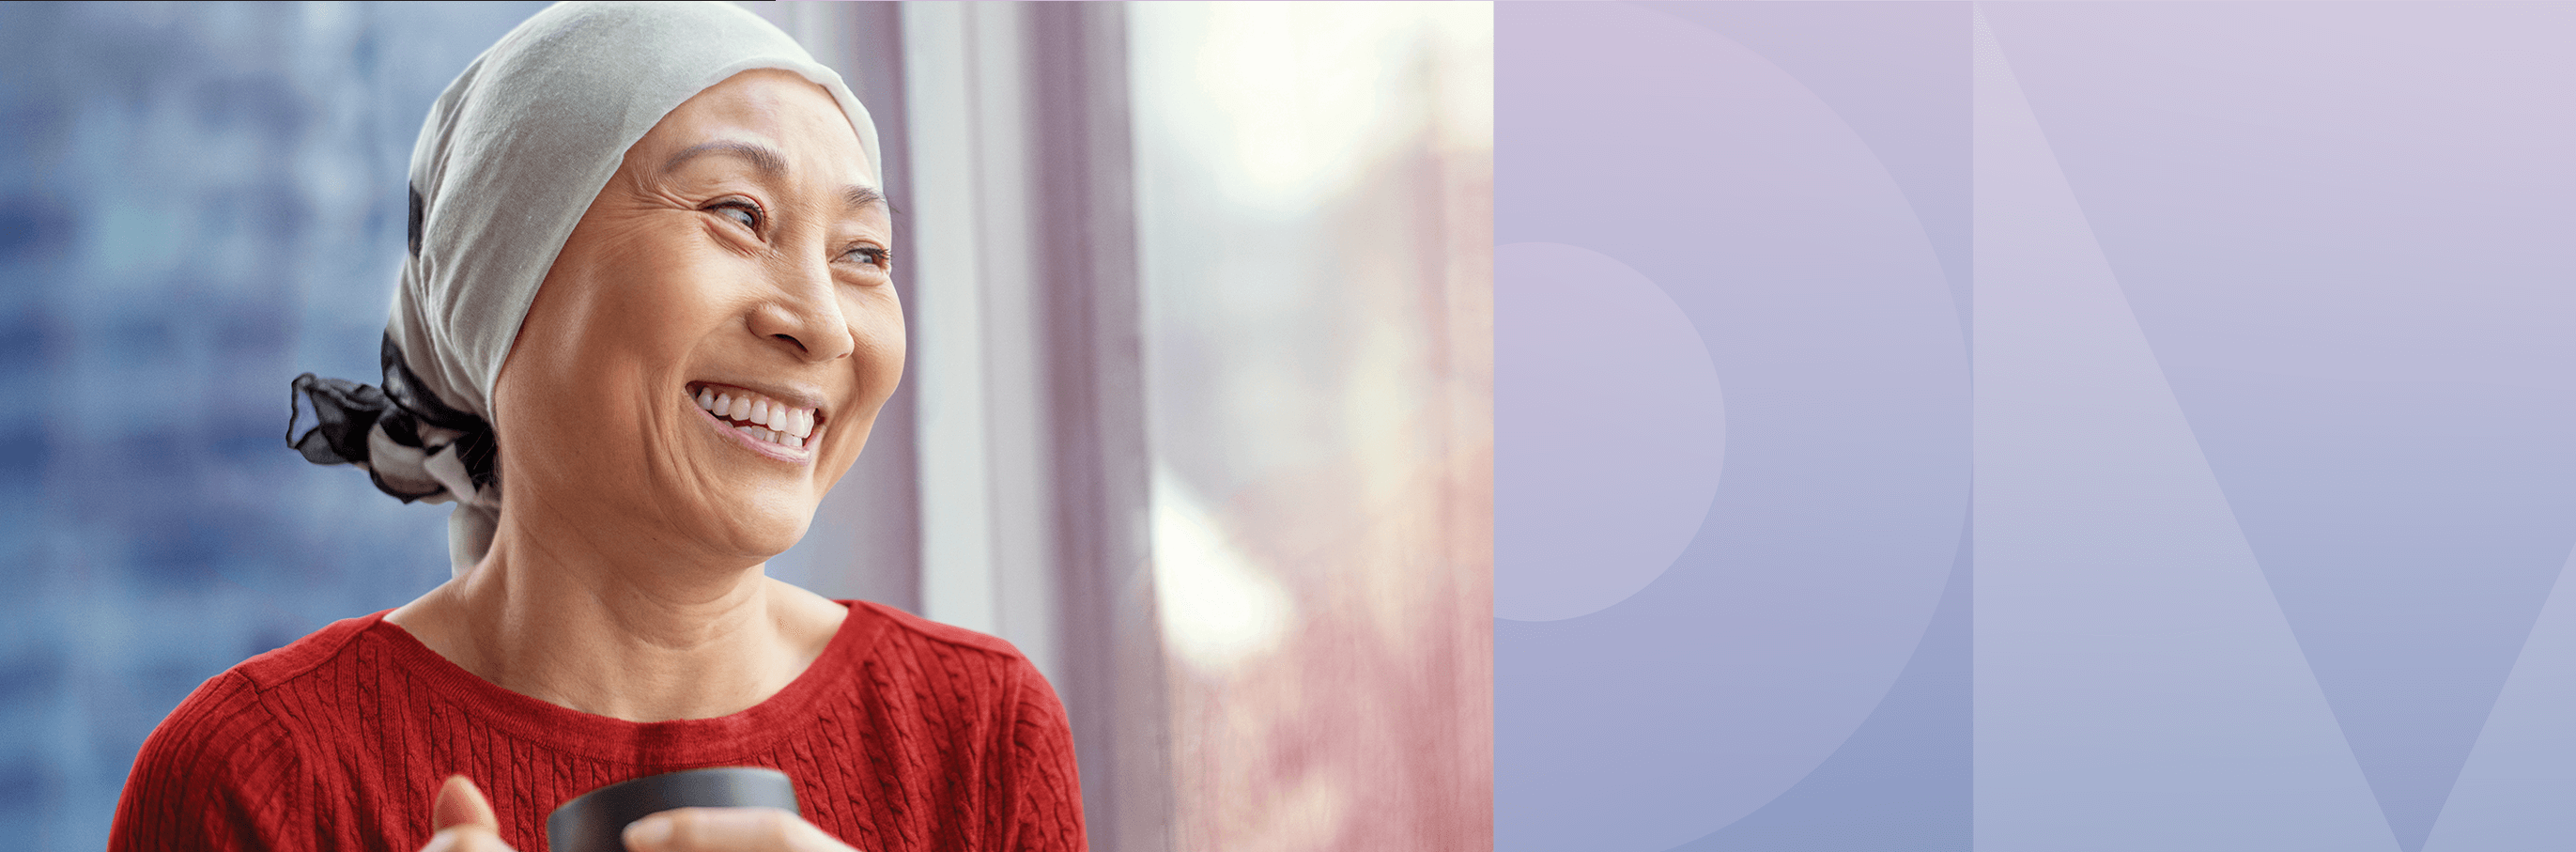 Ein großes Banner auf einem Gebäude mit dem Schriftzug „Smarter beim Kampf gegen Krankheiten – durch leistungsstarke Datenverarbeitung“ das eine Frau in einer roten Bluse und mit einem hellgrünen Kopftuch zeigt, die fröhlich lächelt, als sie aus dem Fenster eines städtischen Hochhauses zu ihrer Linken schaut.